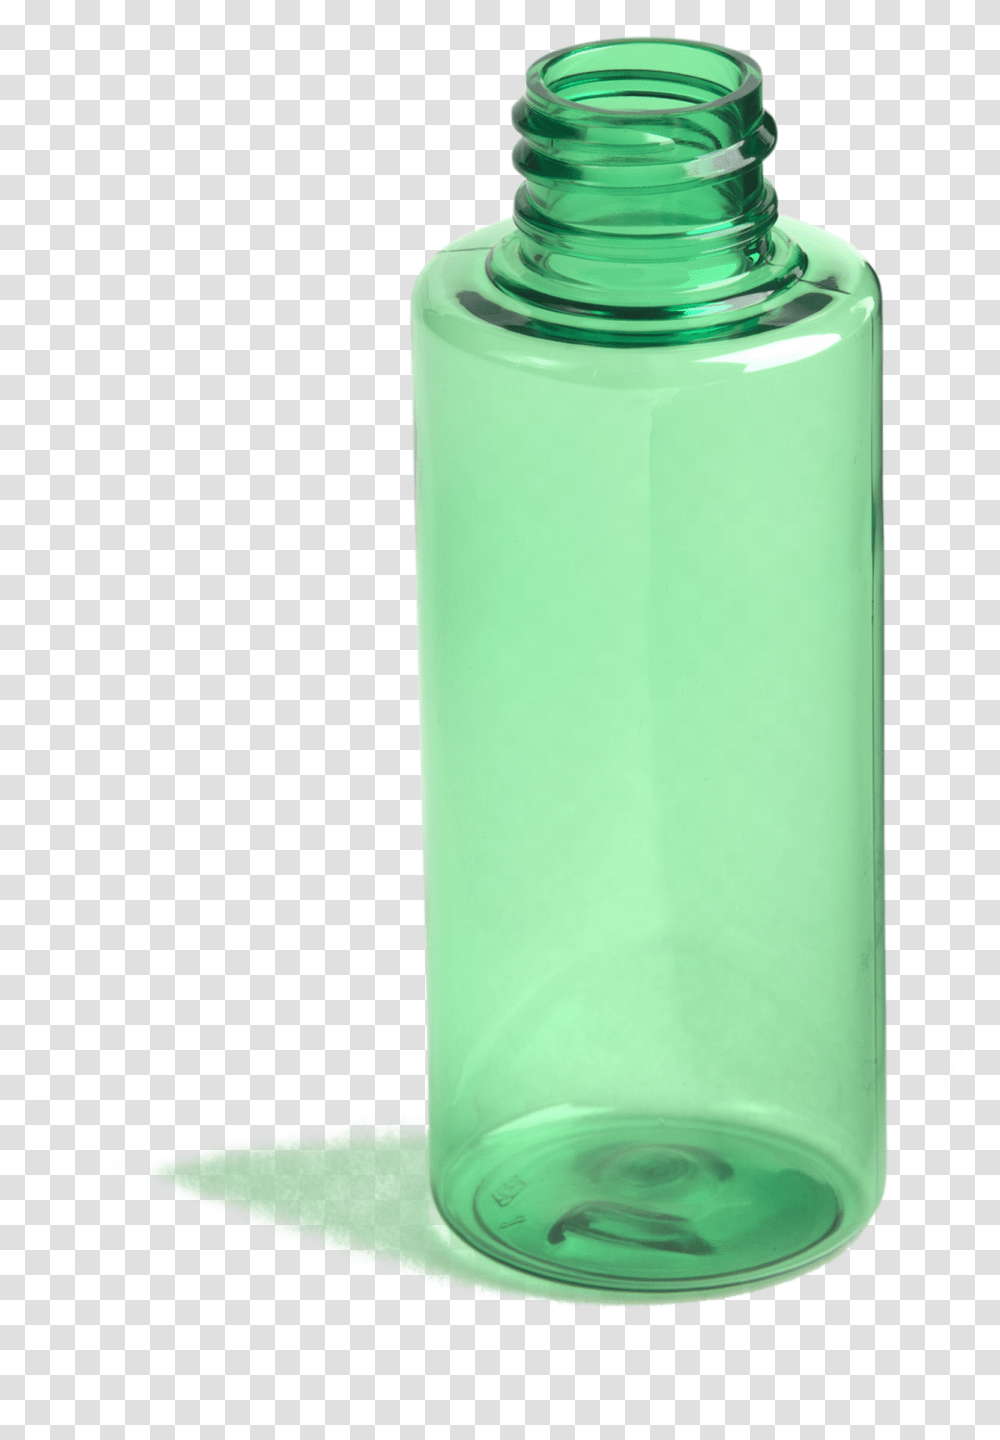 Oz Cylindrical Vial Glass Bottle, Shaker, Water Bottle, Milk, Beverage Transparent Png